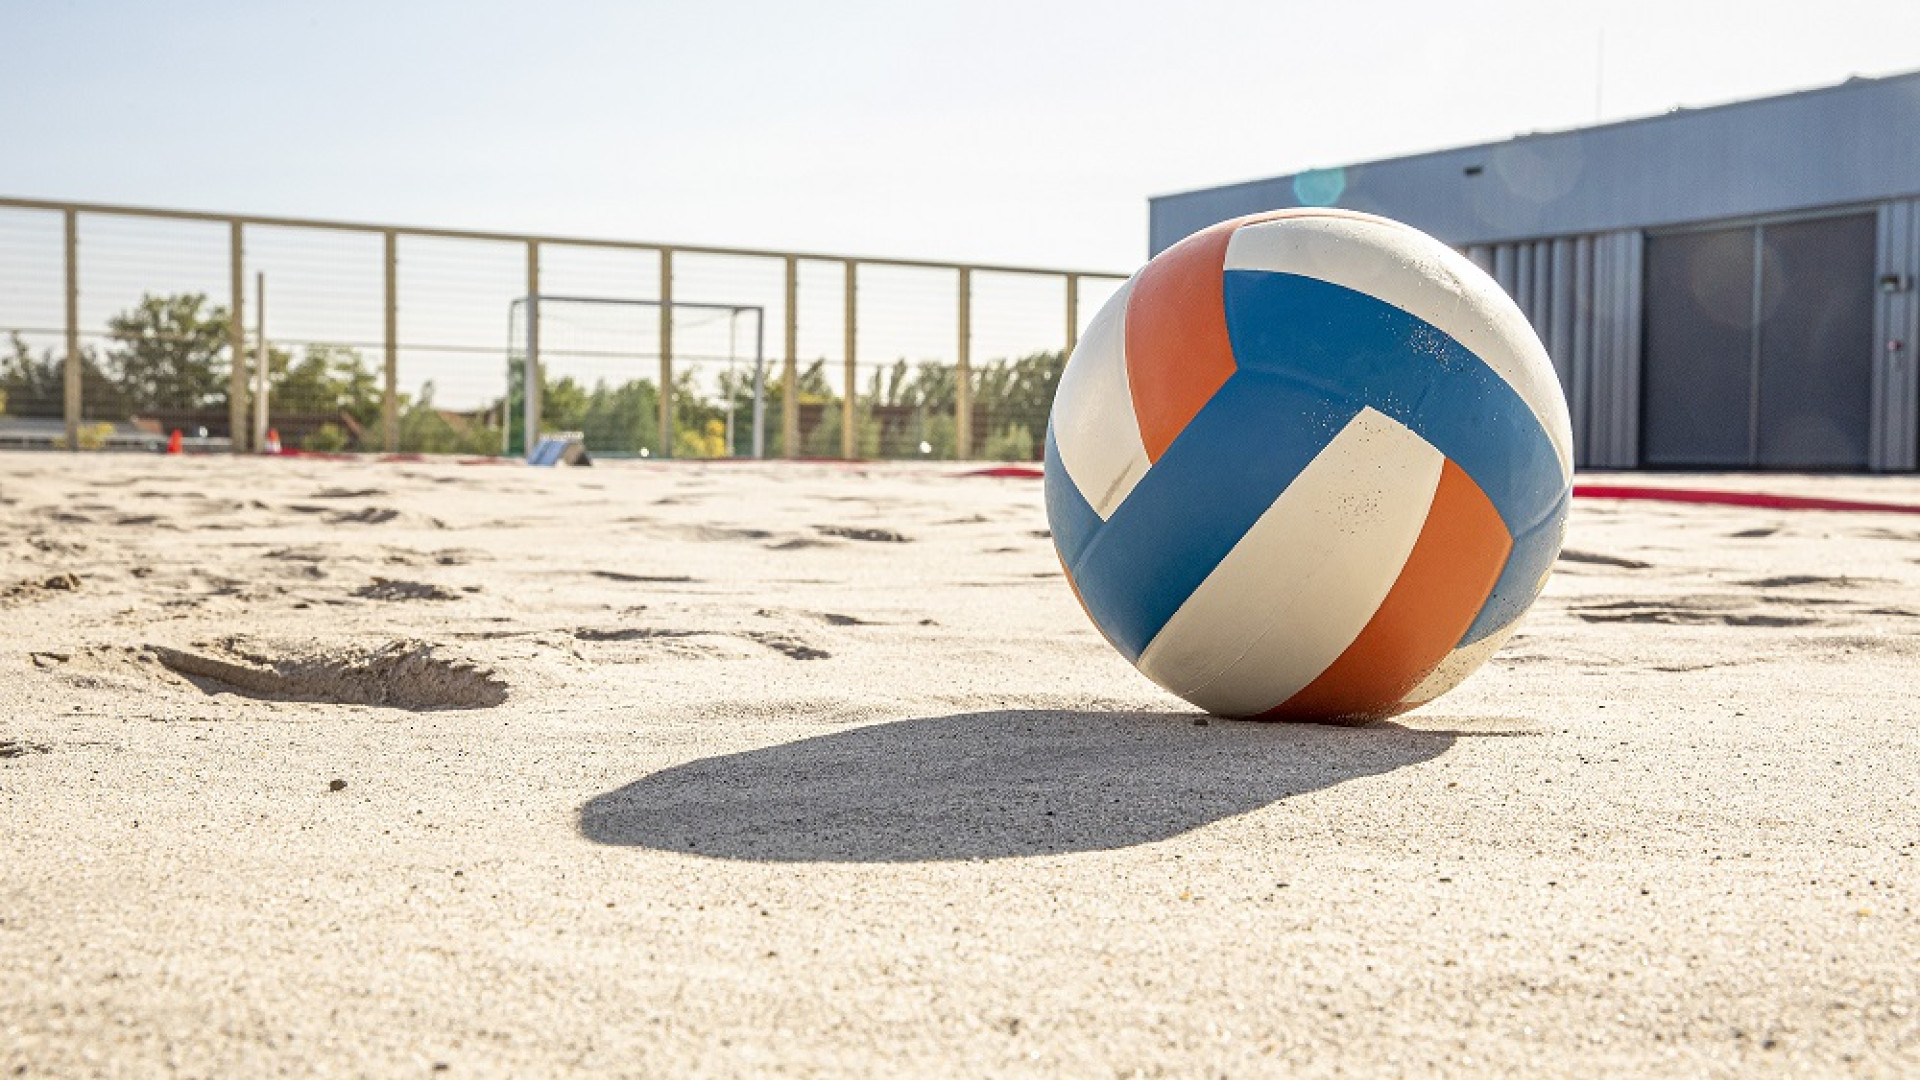 SC_BeachnBurgers_volleybal_beachveld_Sportcentrum.jpg